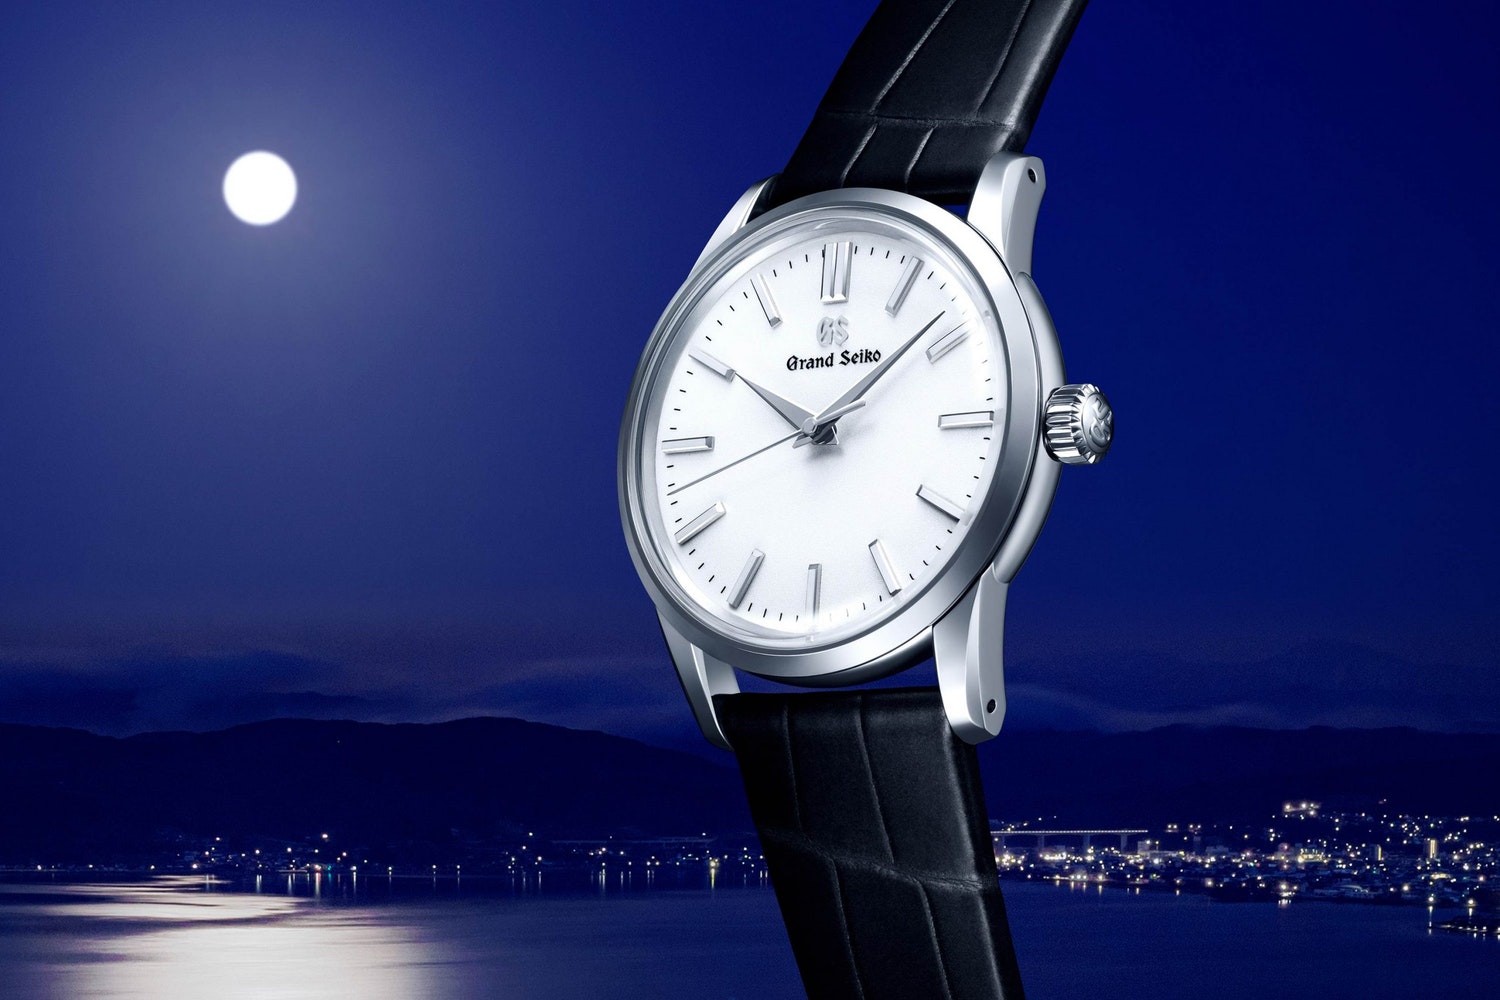 Đồng hồ Grand Seiko phiên bản bổ sung cho bộ sưu tập sang trọng | Kỳ Lân  Luxury